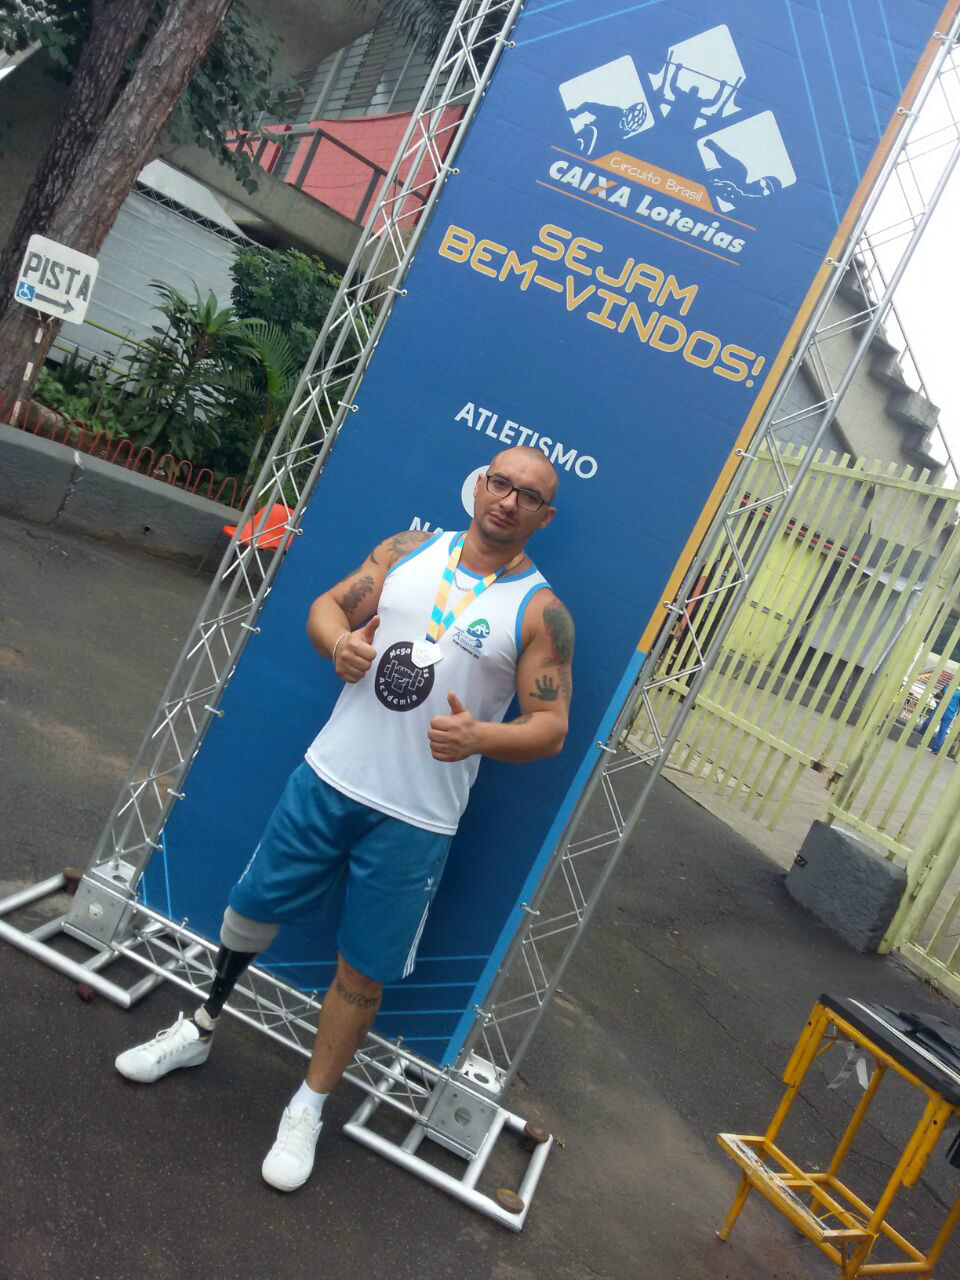  O paratleta três-lagoense Felipe Araújo participou da primeira etapa nacional do Circuito Caixa Loterias de Atletismo e Natação. (Foto: Assessoria)